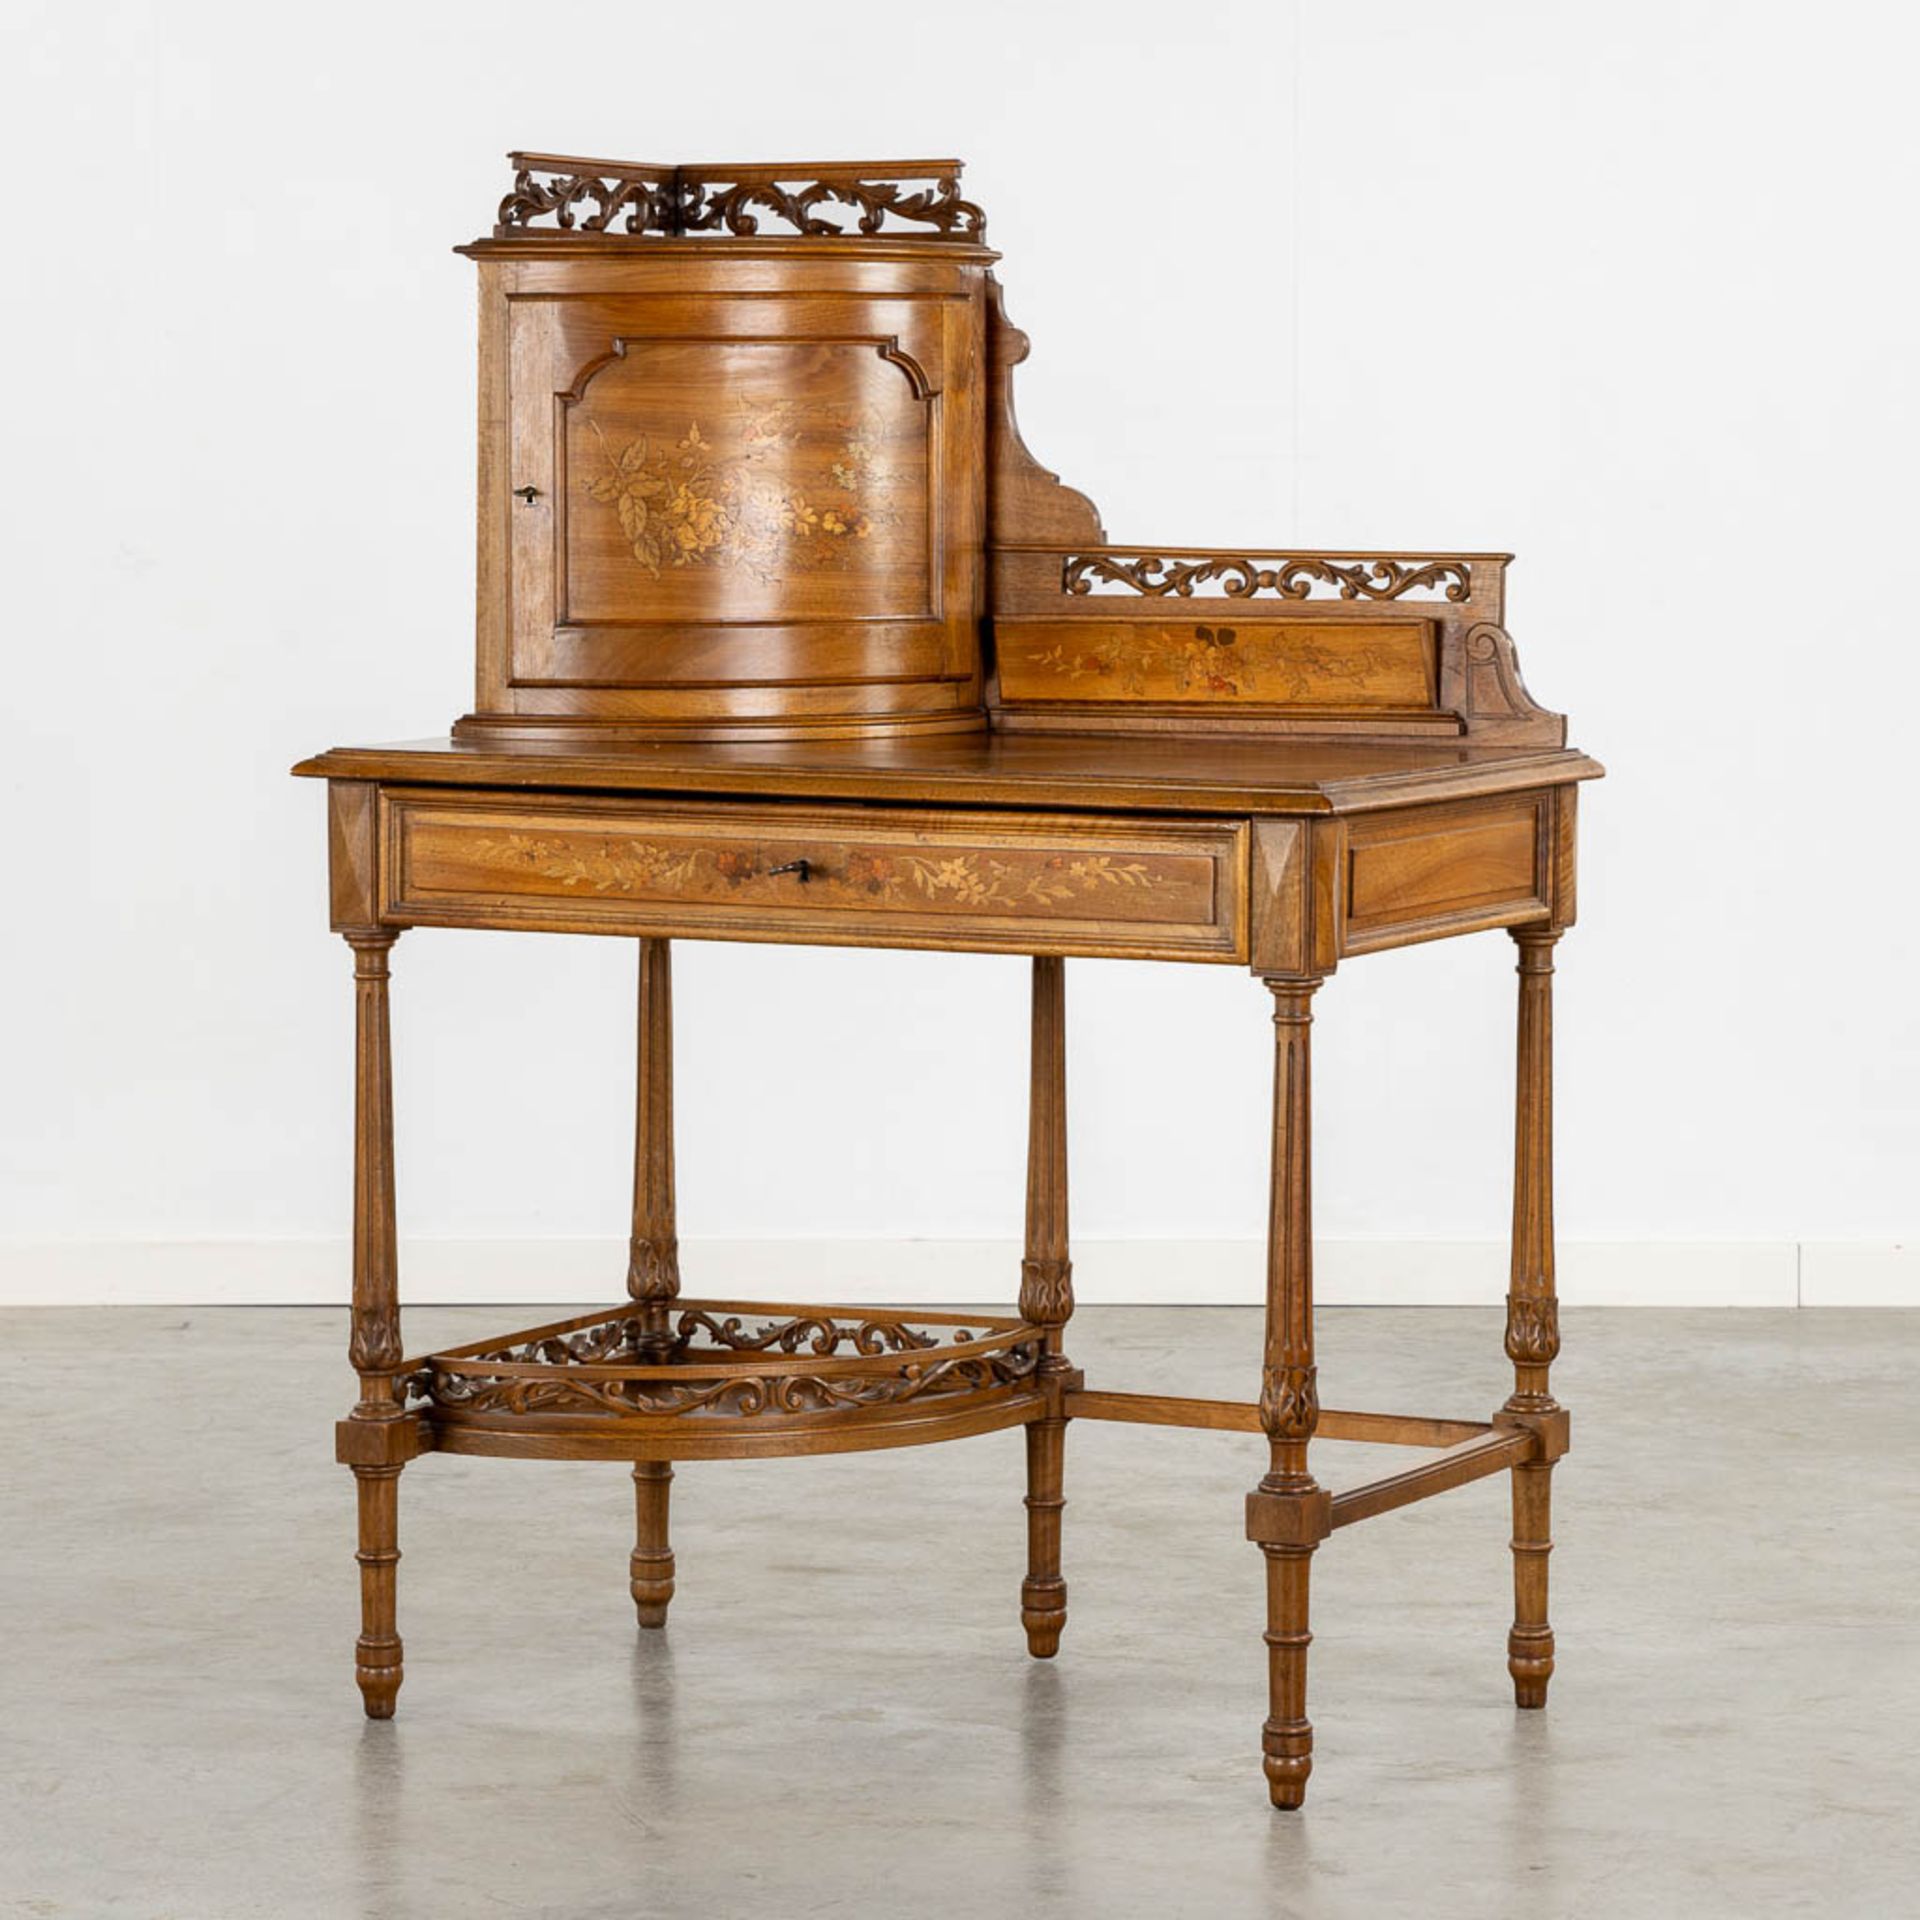 An elegant ladies' desk, walnut with marquetry inlay. 19th C. (L:50 x W:88 x H:120 cm)